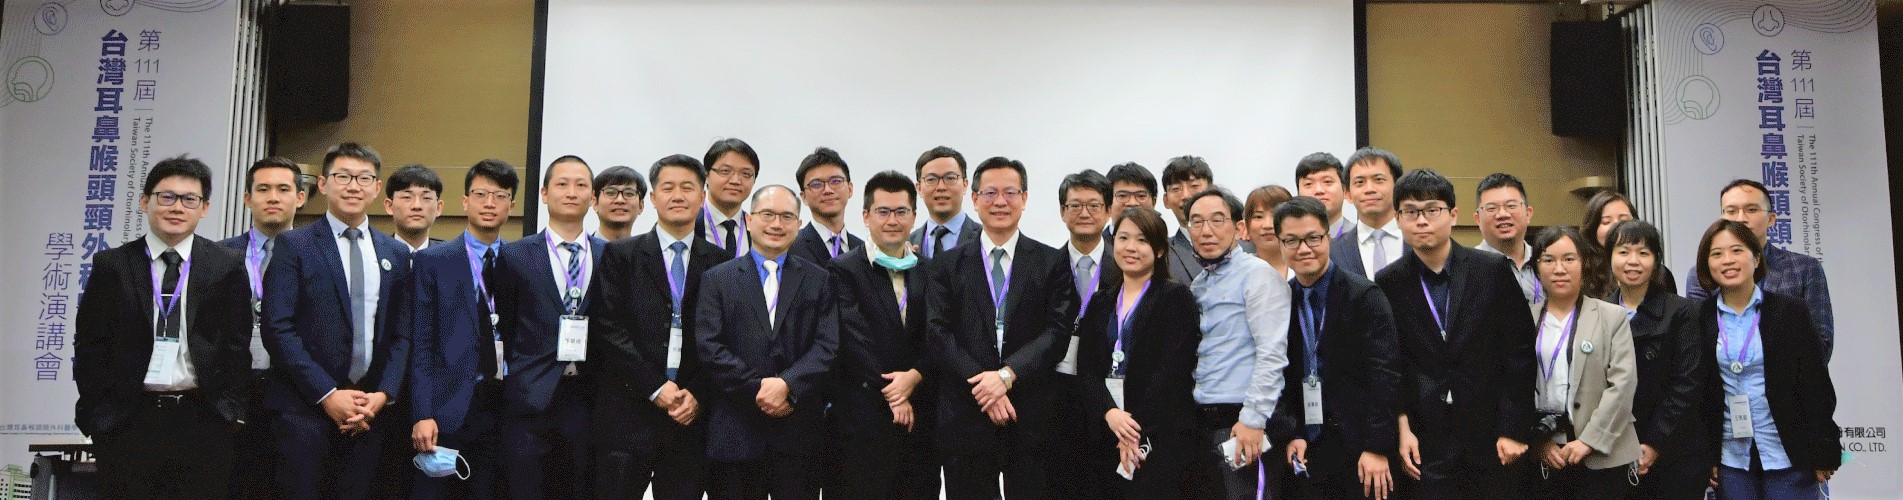 第111屆台灣耳鼻喉頭頸外科學術研討會